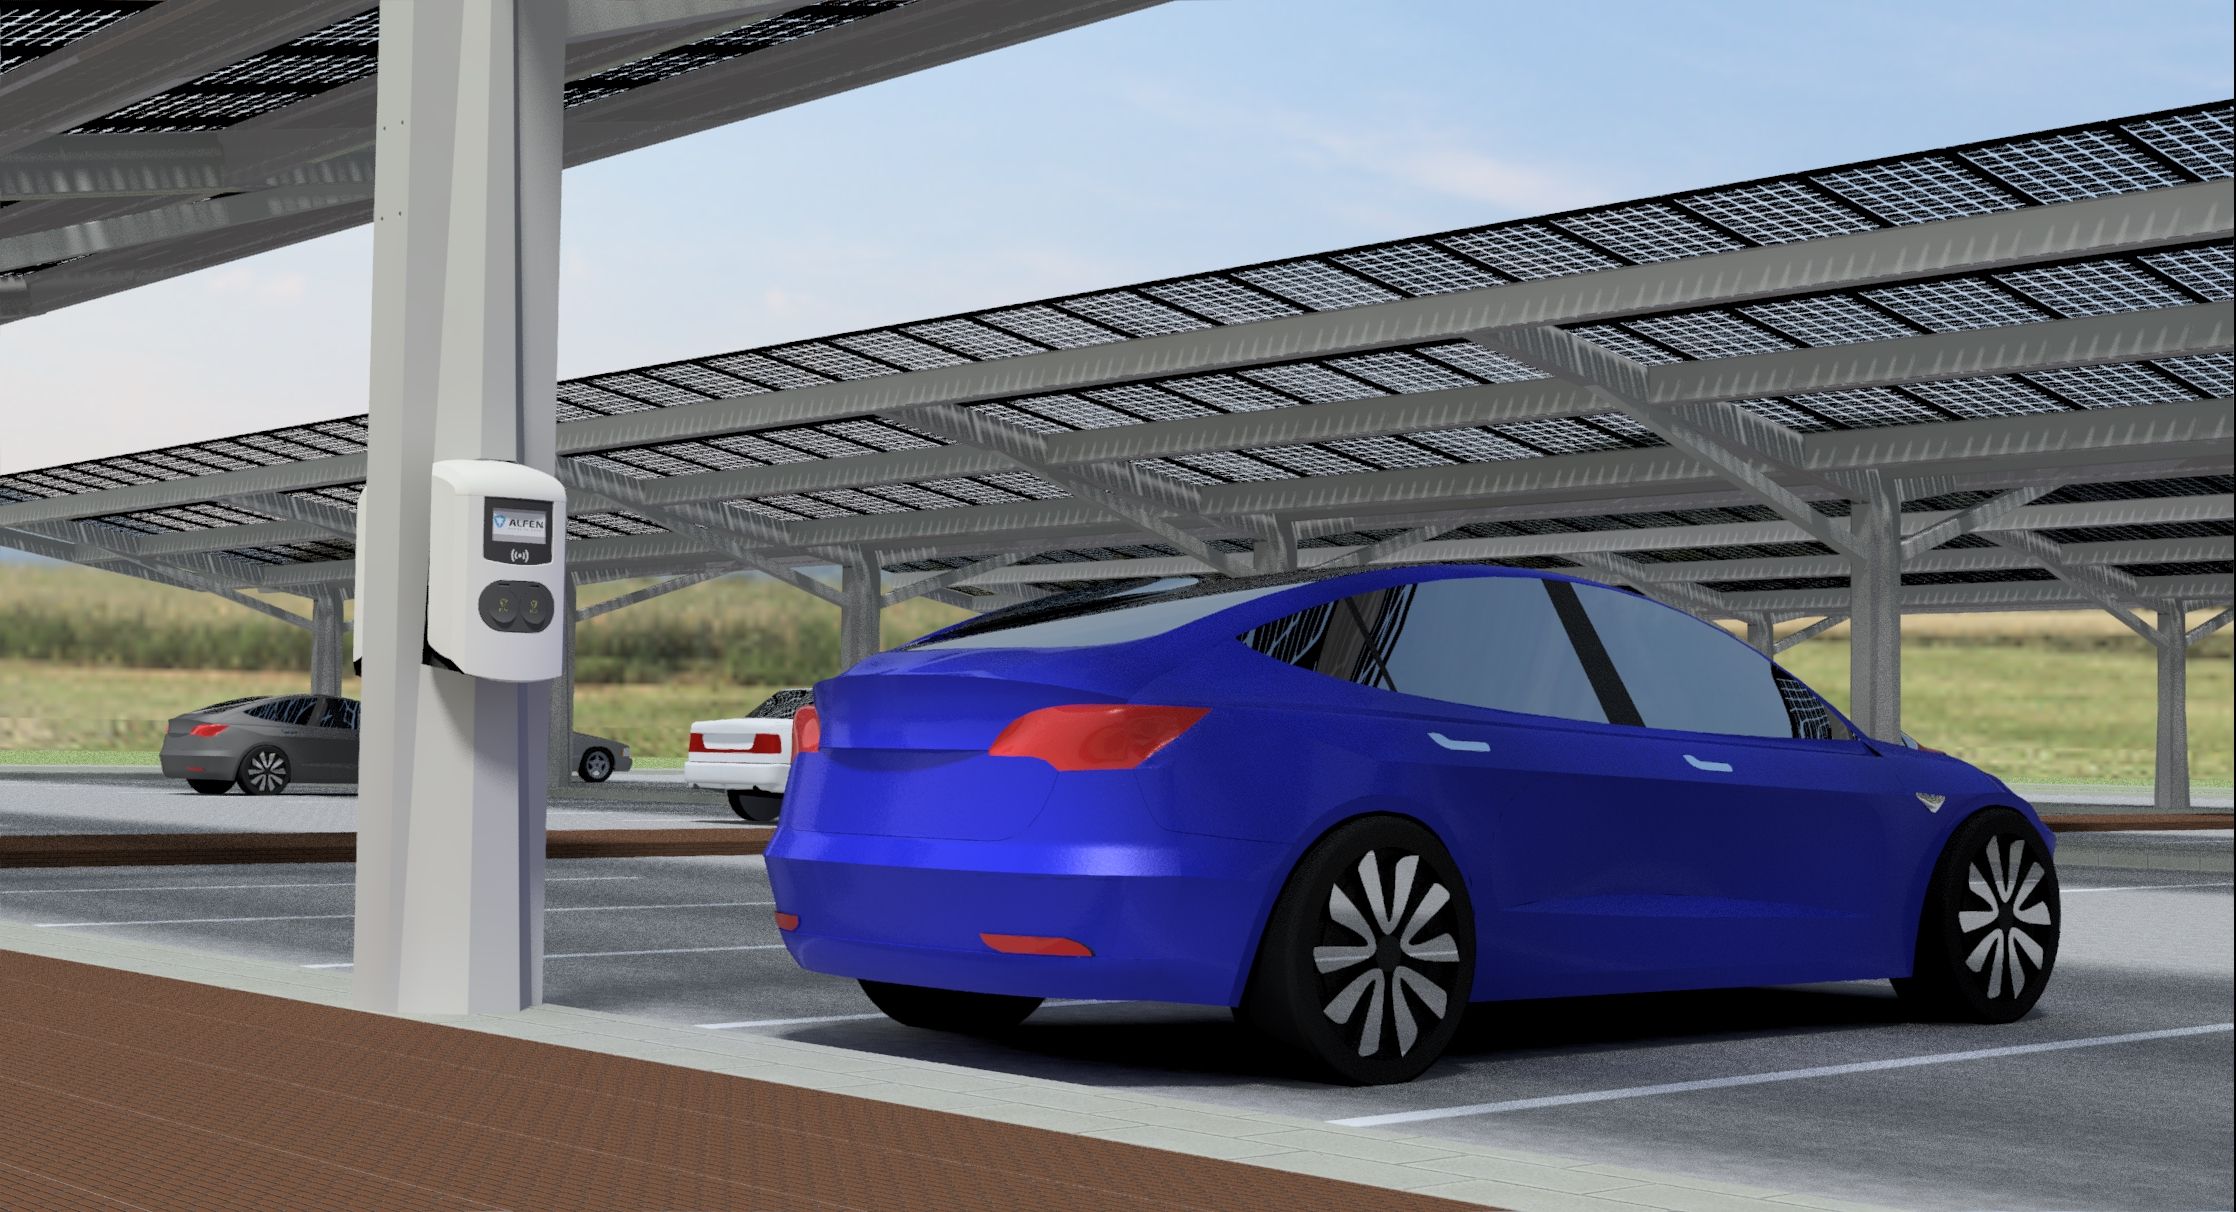 Artistieke impressie van carports met zonnepanelen op parkeerplaats. Beeldrechten zijn van Solar Partners en Eneco.